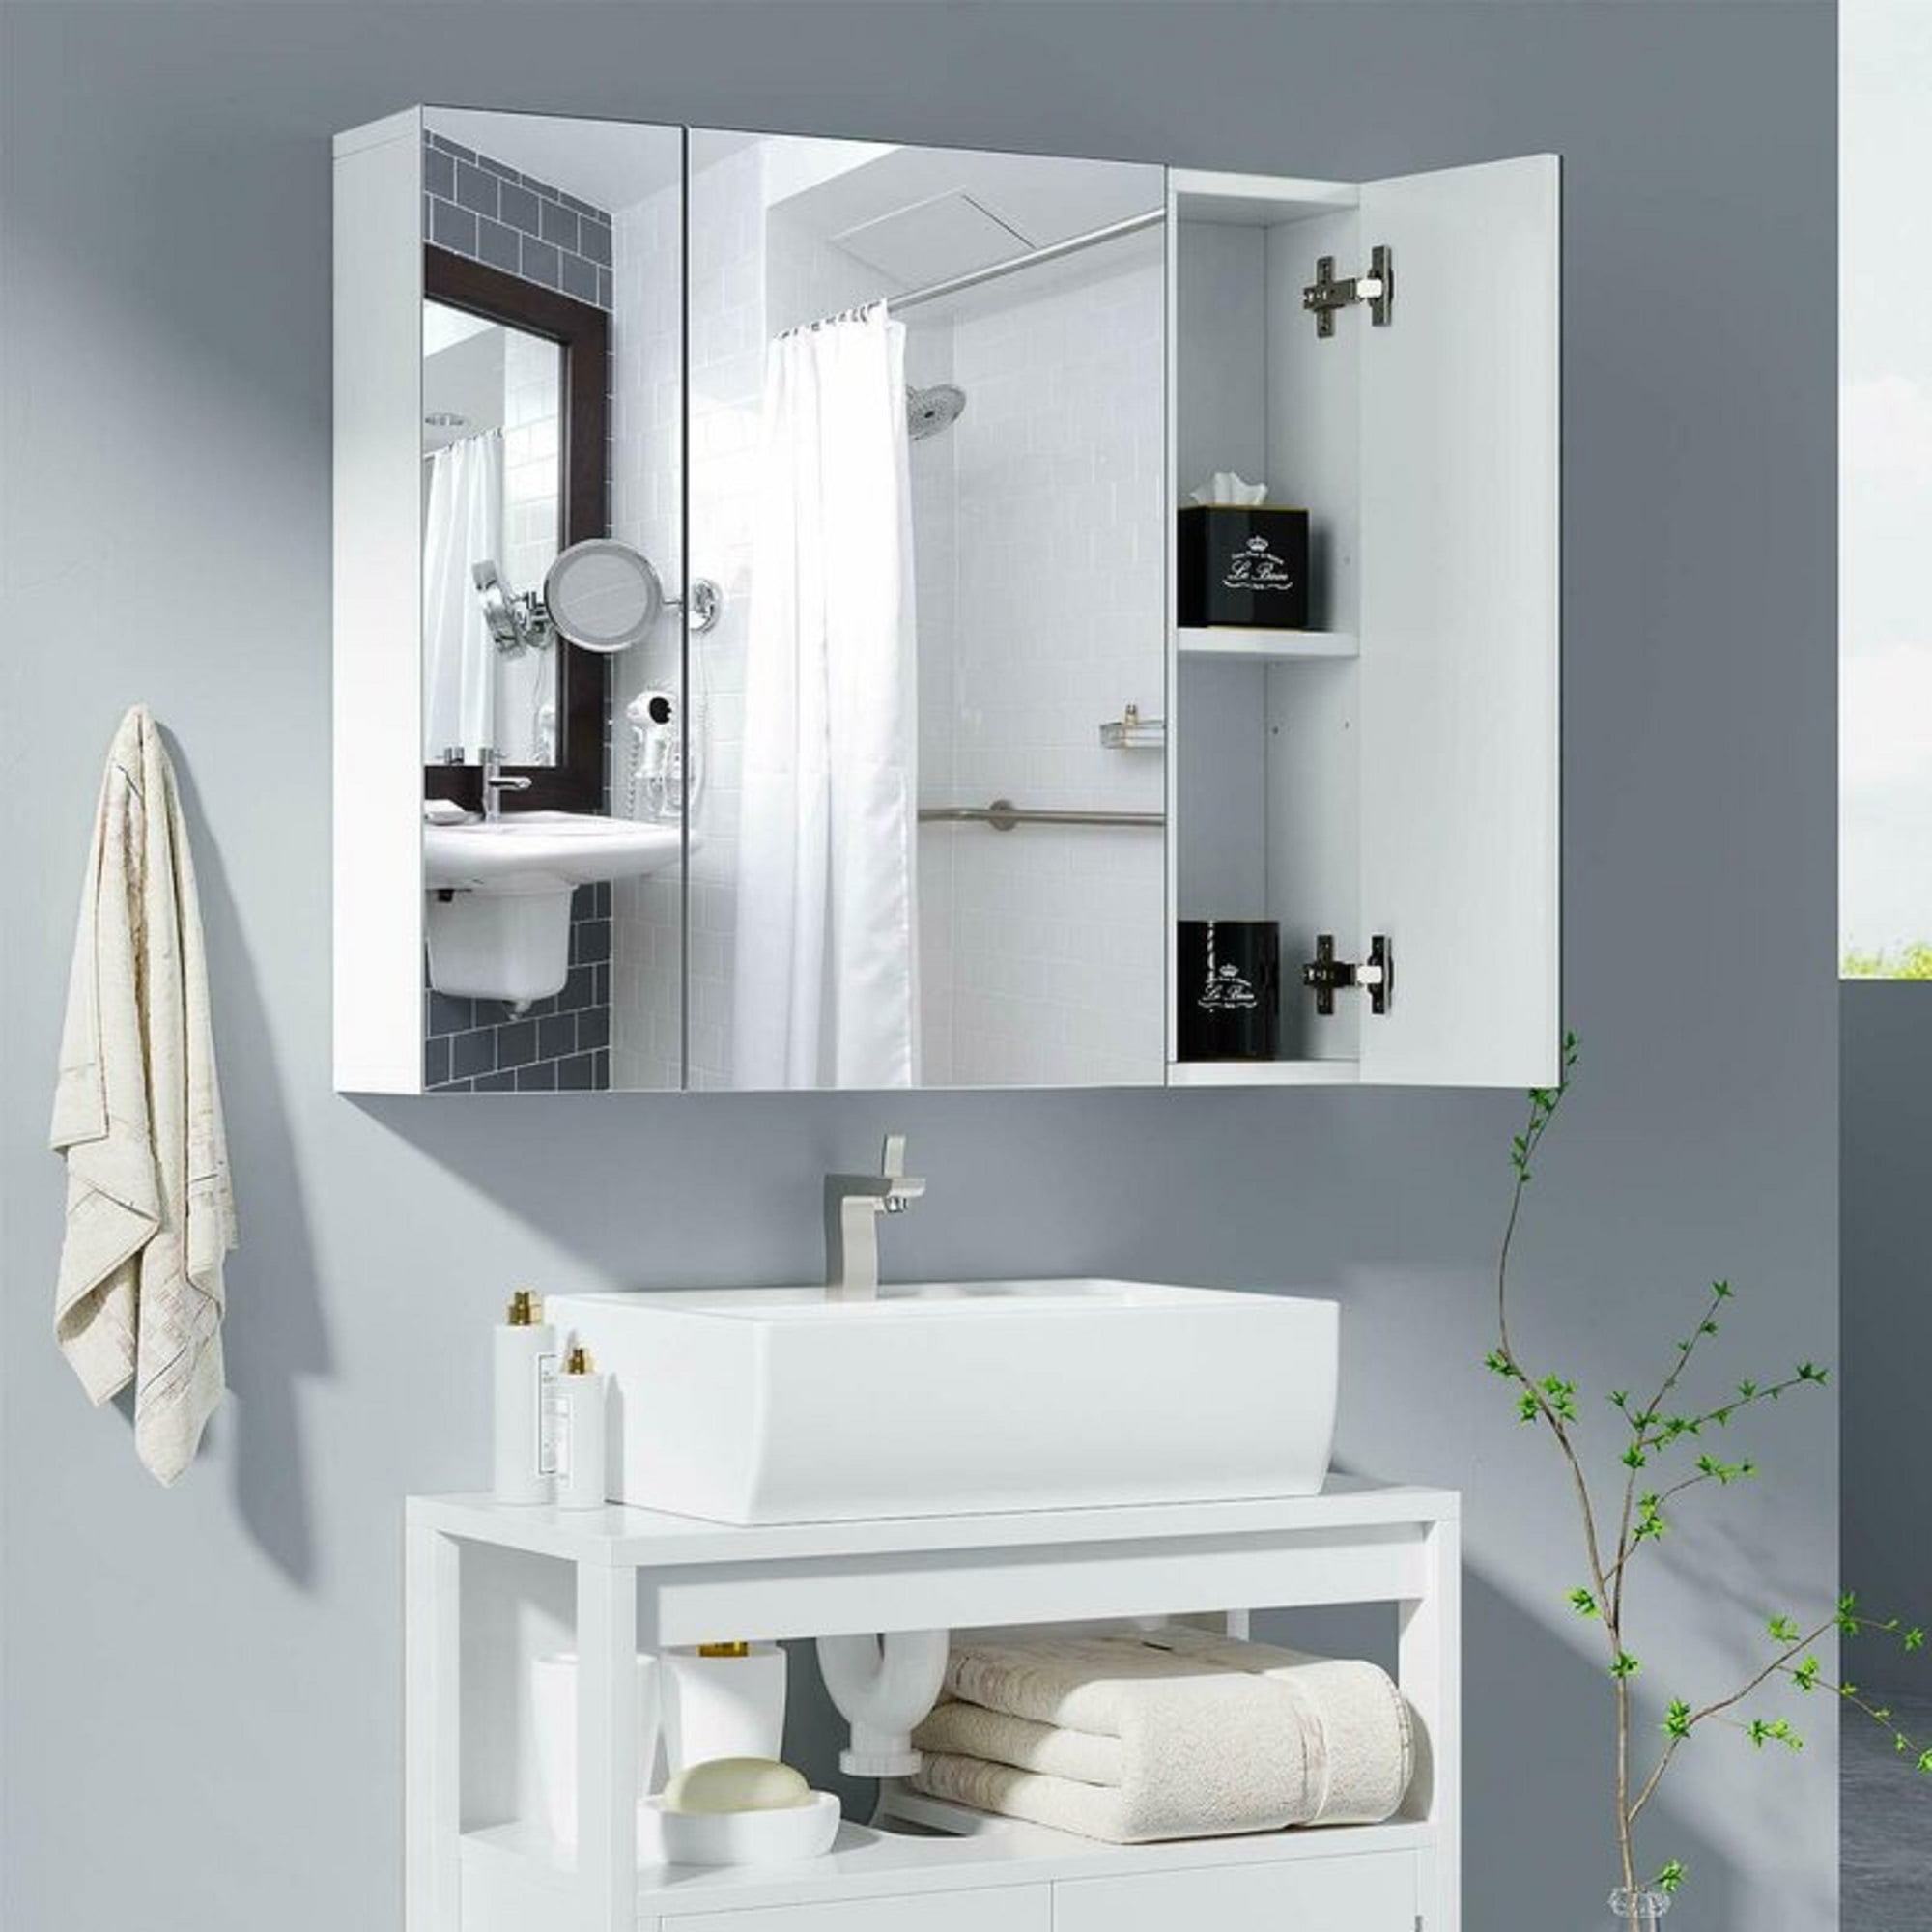 Homfa Bathroom Wall Mirror Cabinet 27, Medicine Cabinet With Mirror For Small Bathroom